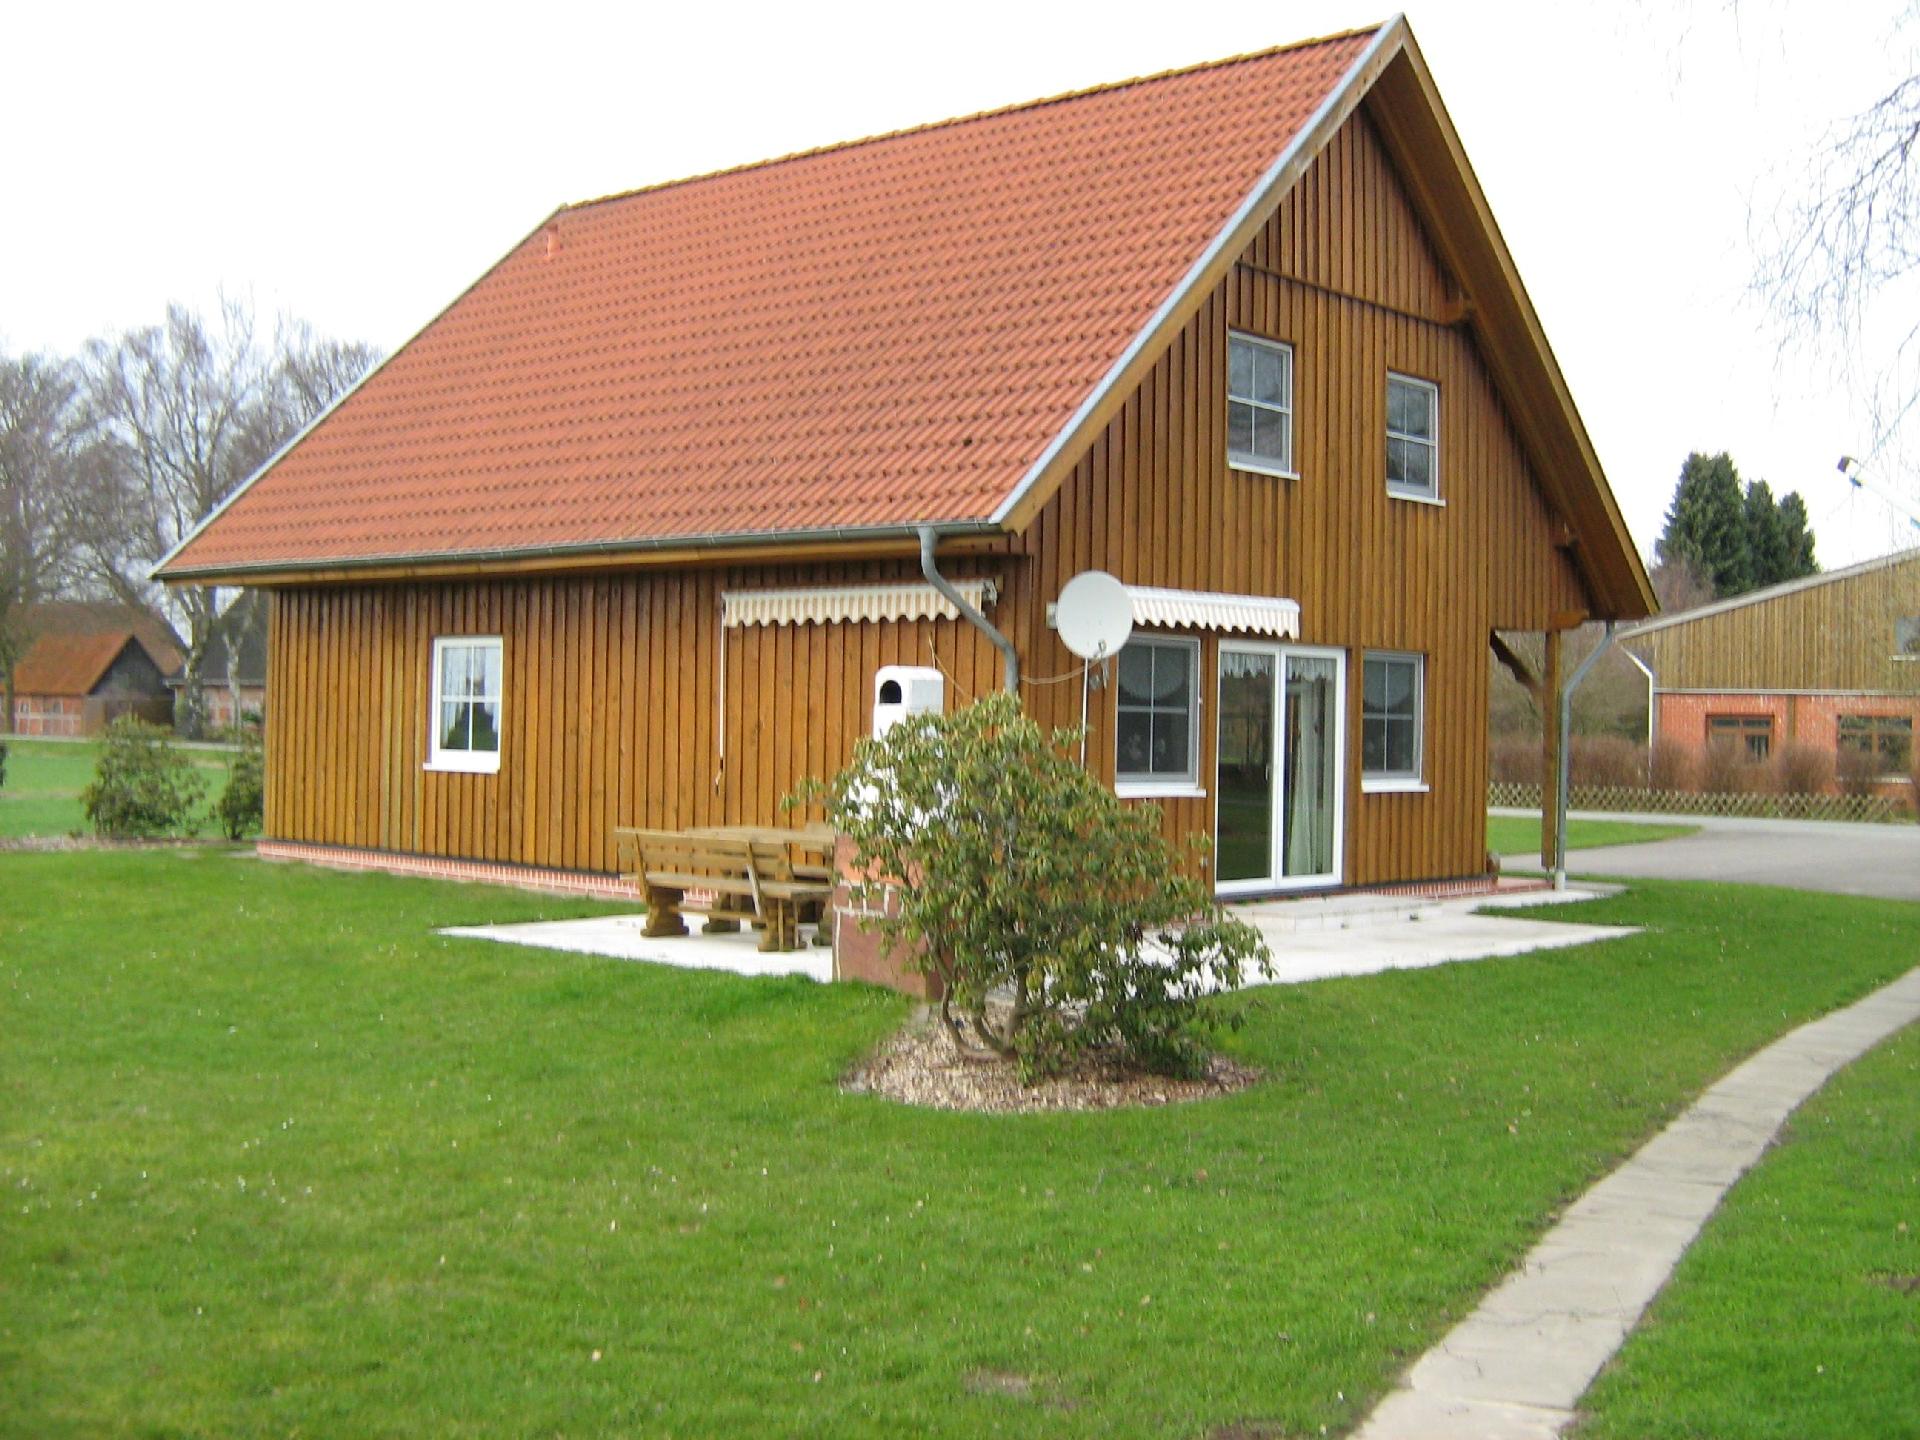 Ferienhaus für 16 Personen mit Terrasse Ferienhaus in Niedersachsen